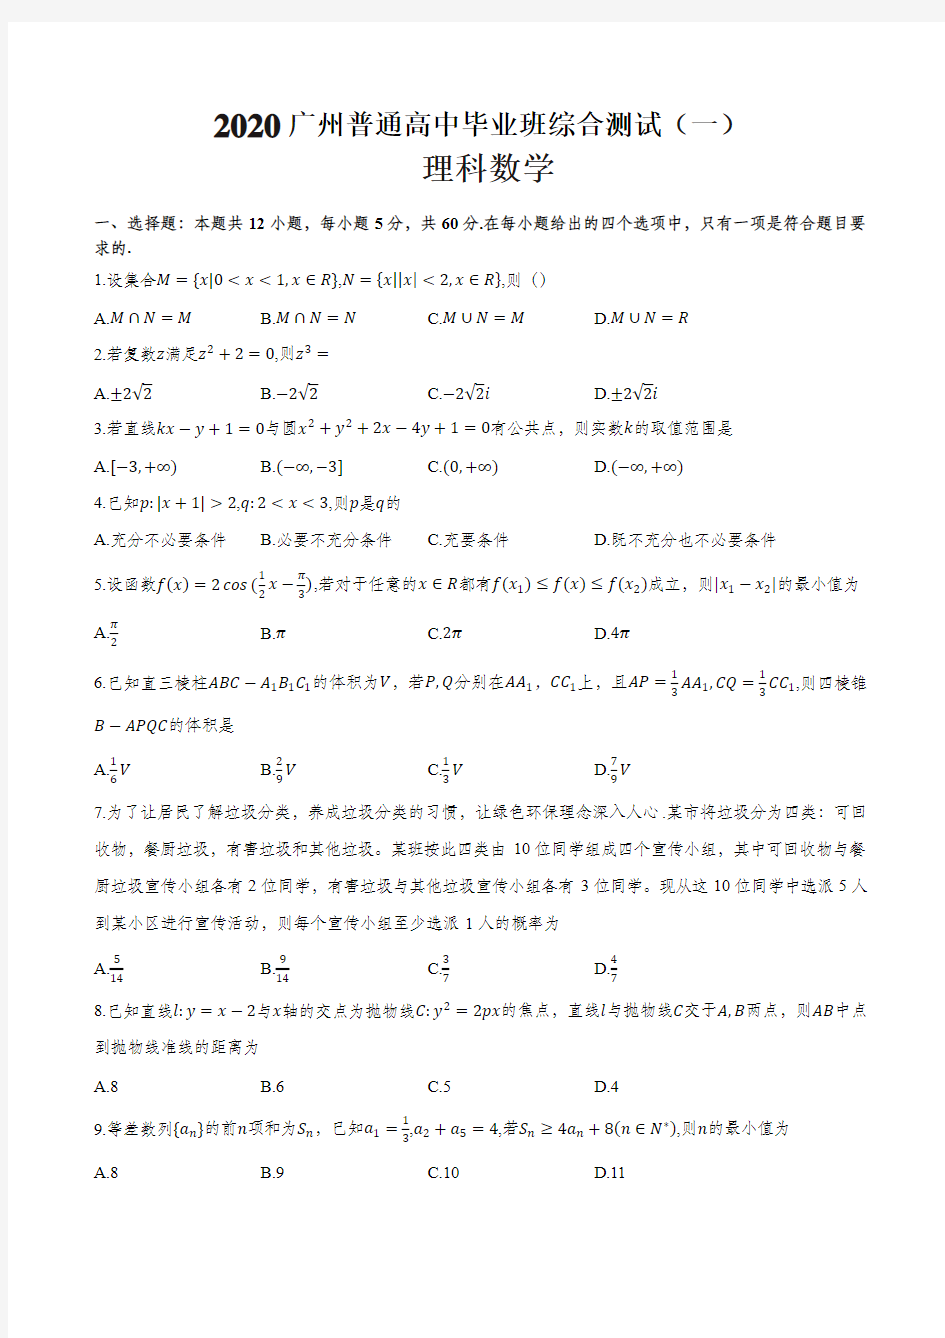 2020广州综合测试(一)理科数学试卷及其答案